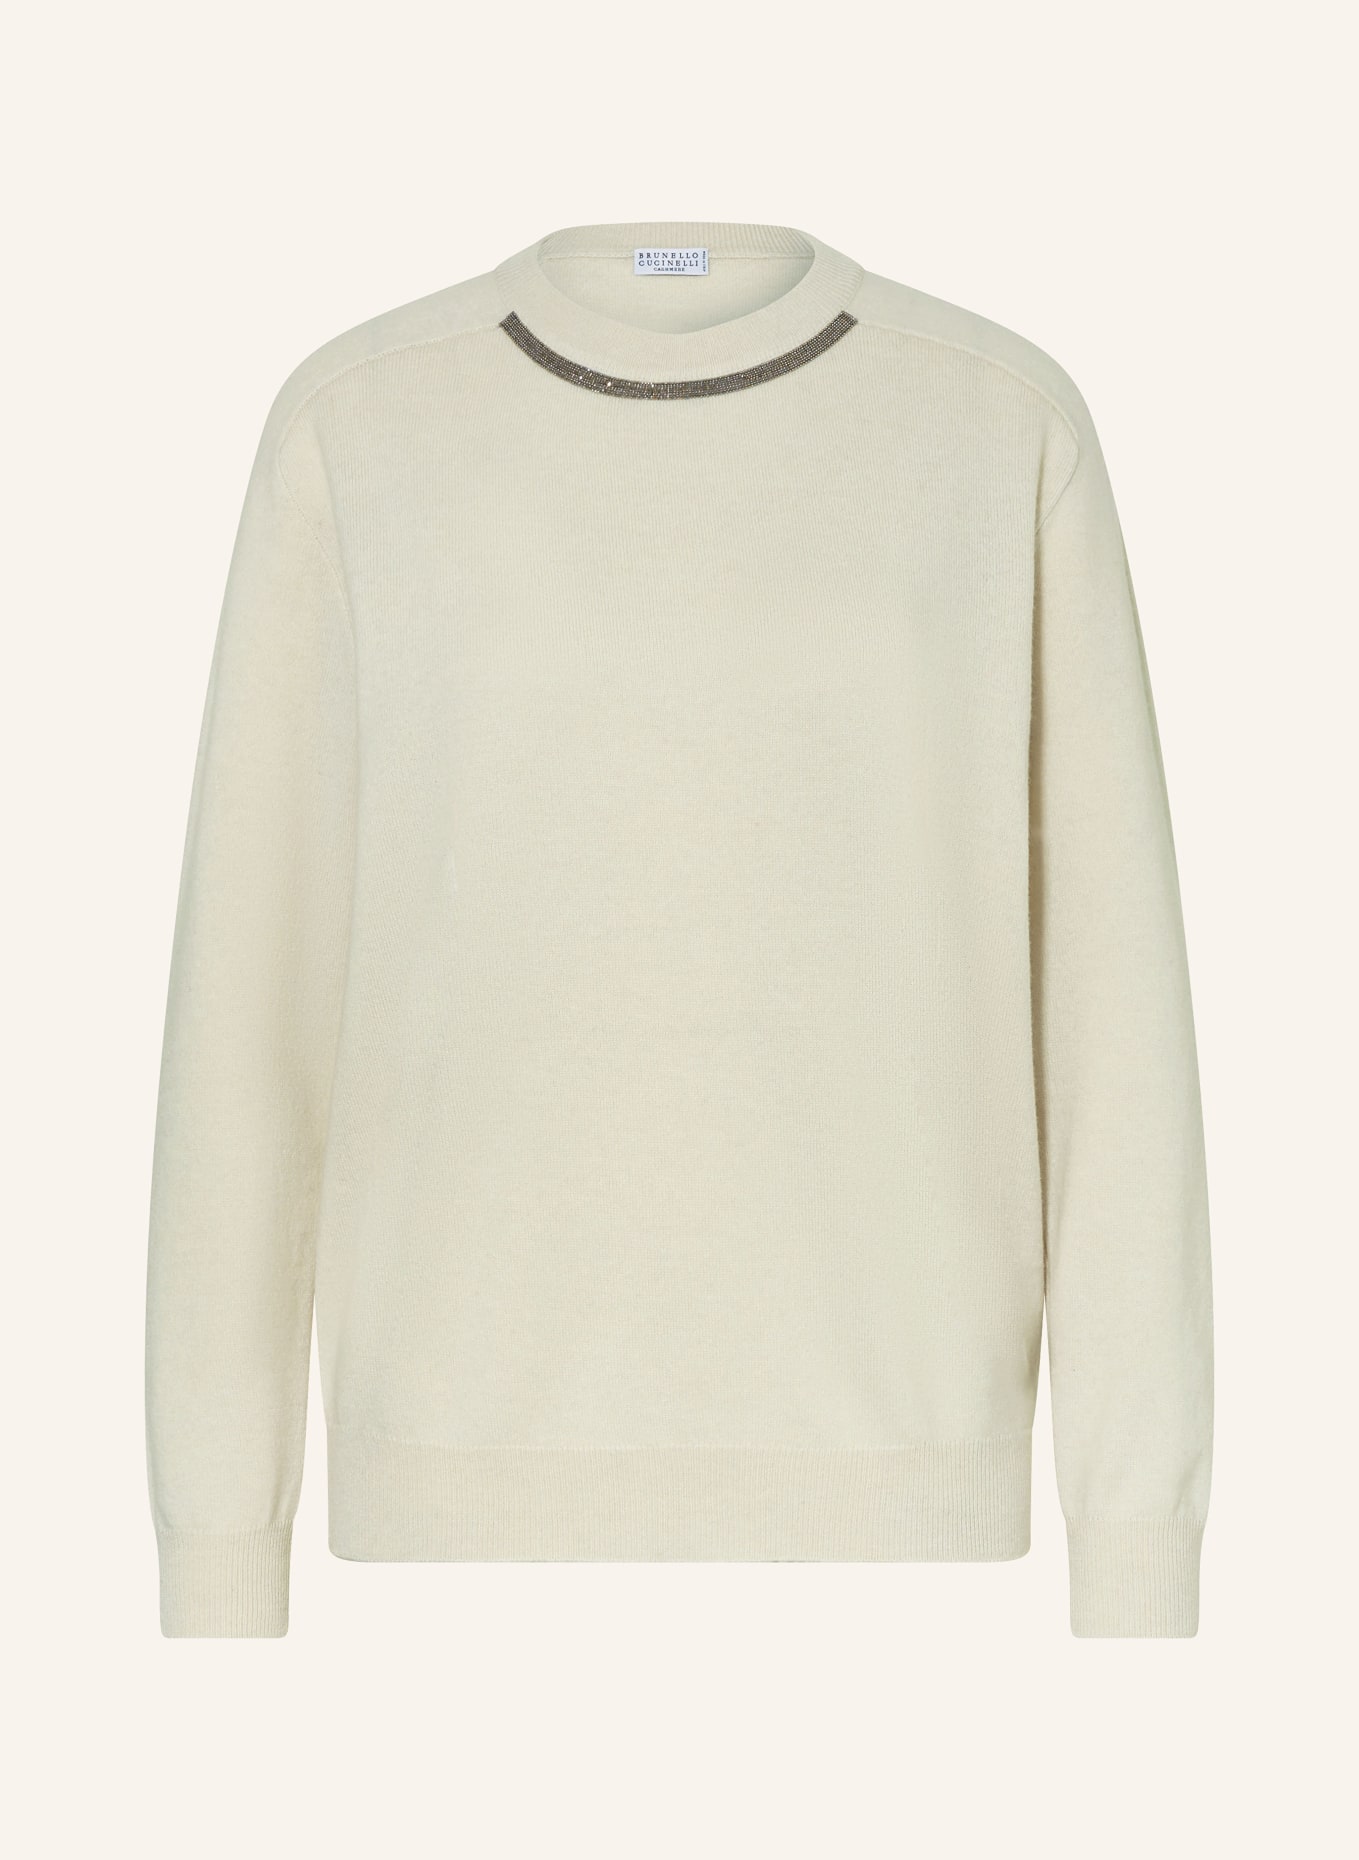 BRUNELLO CUCINELLI Cashmere-Pullover mit Schmuckperlen, Farbe: CREME (Bild 1)